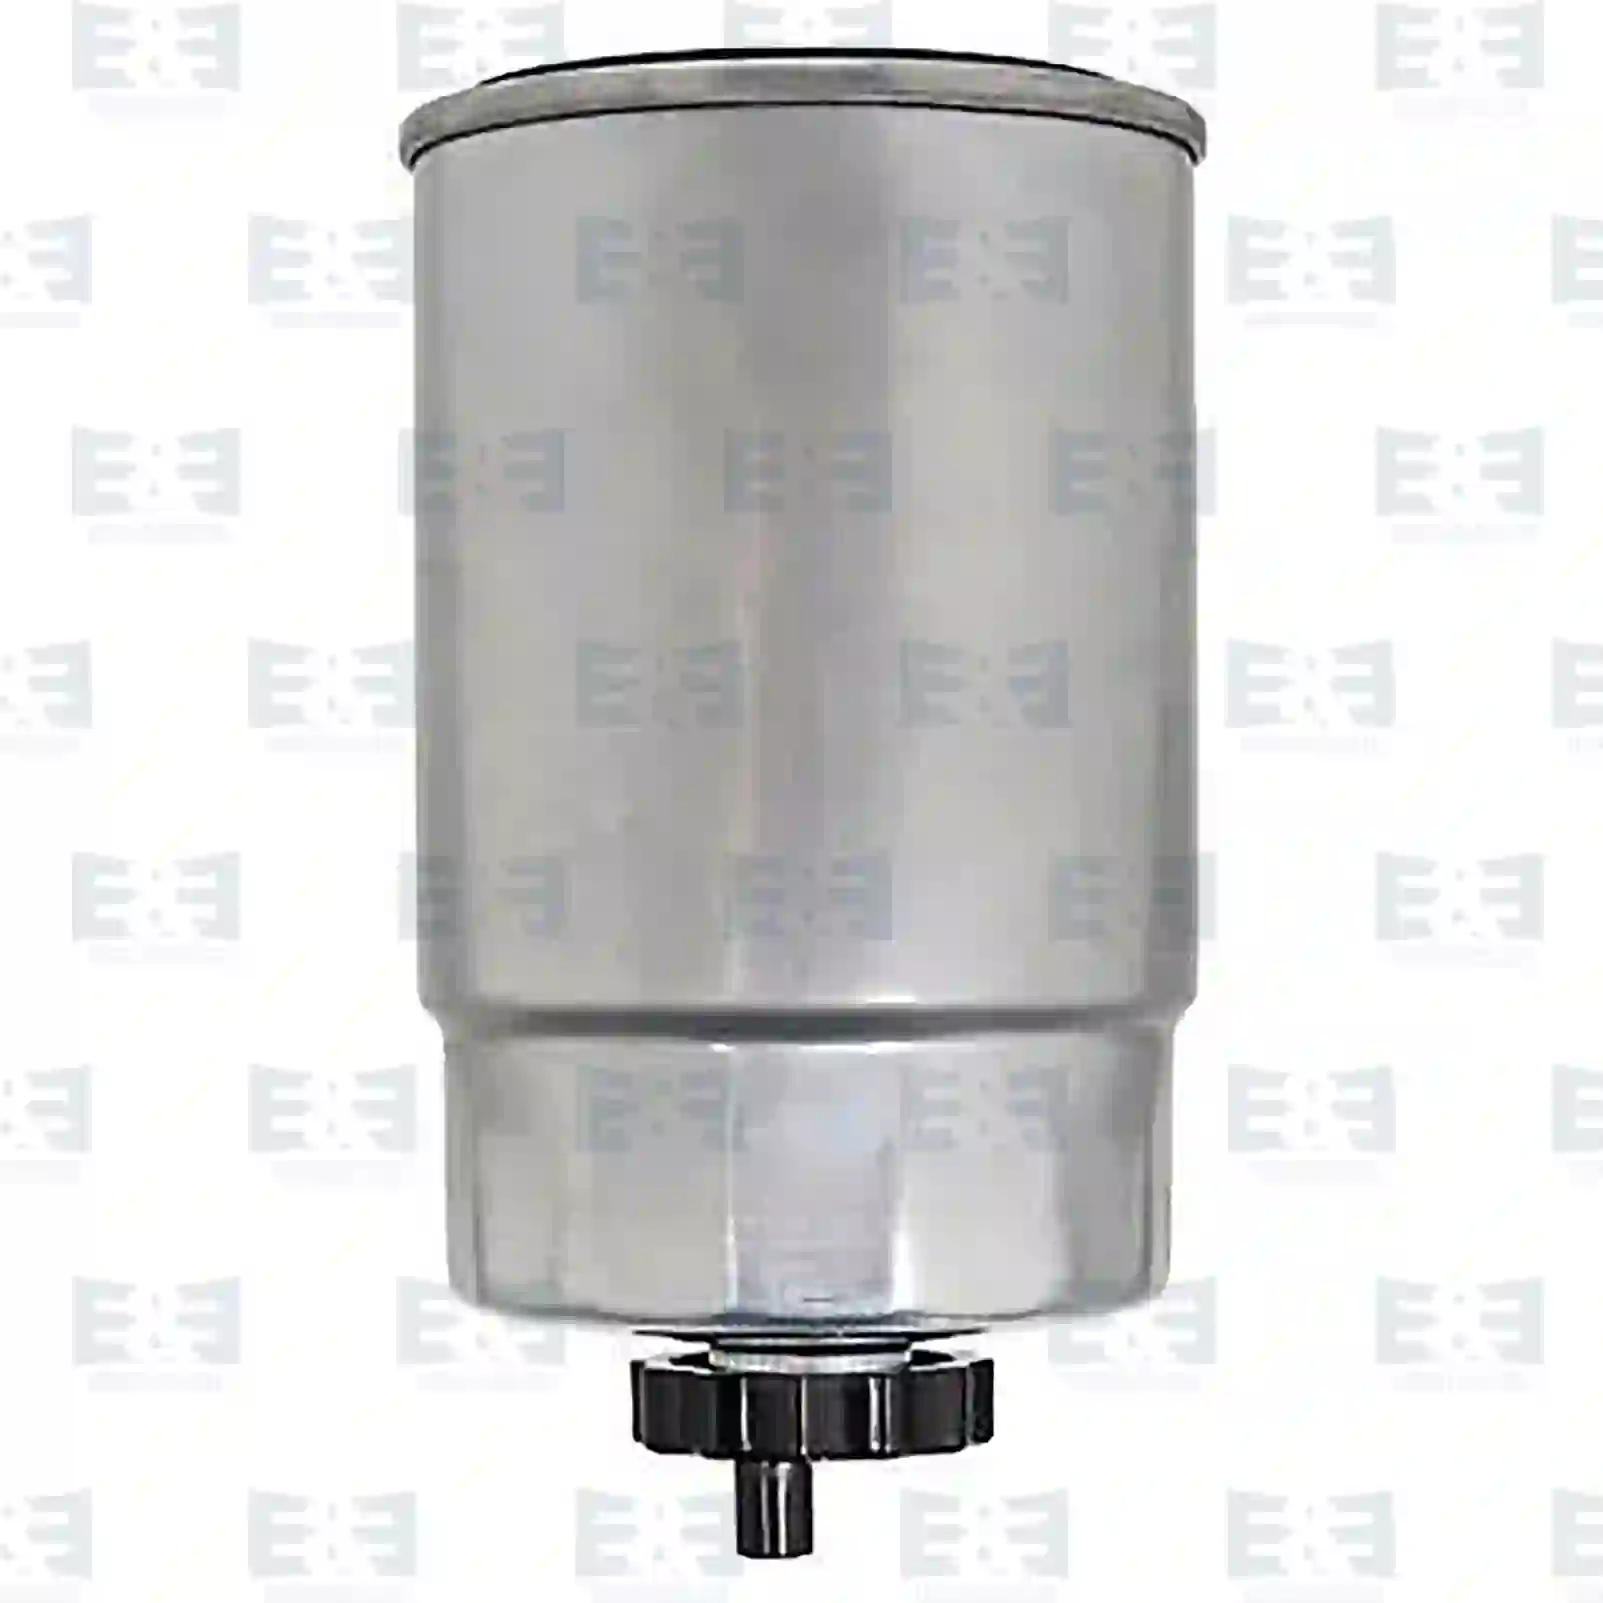 Fuel filter, 2E2286915, 8D0127435, ESR4686, ESR4686, 6K0127401H, 8D0127435, 3B0127400, 3B0819817, 6K0127401G, 6K0127401H, 8D0127435, ZG10111-0008 ||  2E2286915 E&E Truck Spare Parts | Truck Spare Parts, Auotomotive Spare Parts Fuel filter, 2E2286915, 8D0127435, ESR4686, ESR4686, 6K0127401H, 8D0127435, 3B0127400, 3B0819817, 6K0127401G, 6K0127401H, 8D0127435, ZG10111-0008 ||  2E2286915 E&E Truck Spare Parts | Truck Spare Parts, Auotomotive Spare Parts